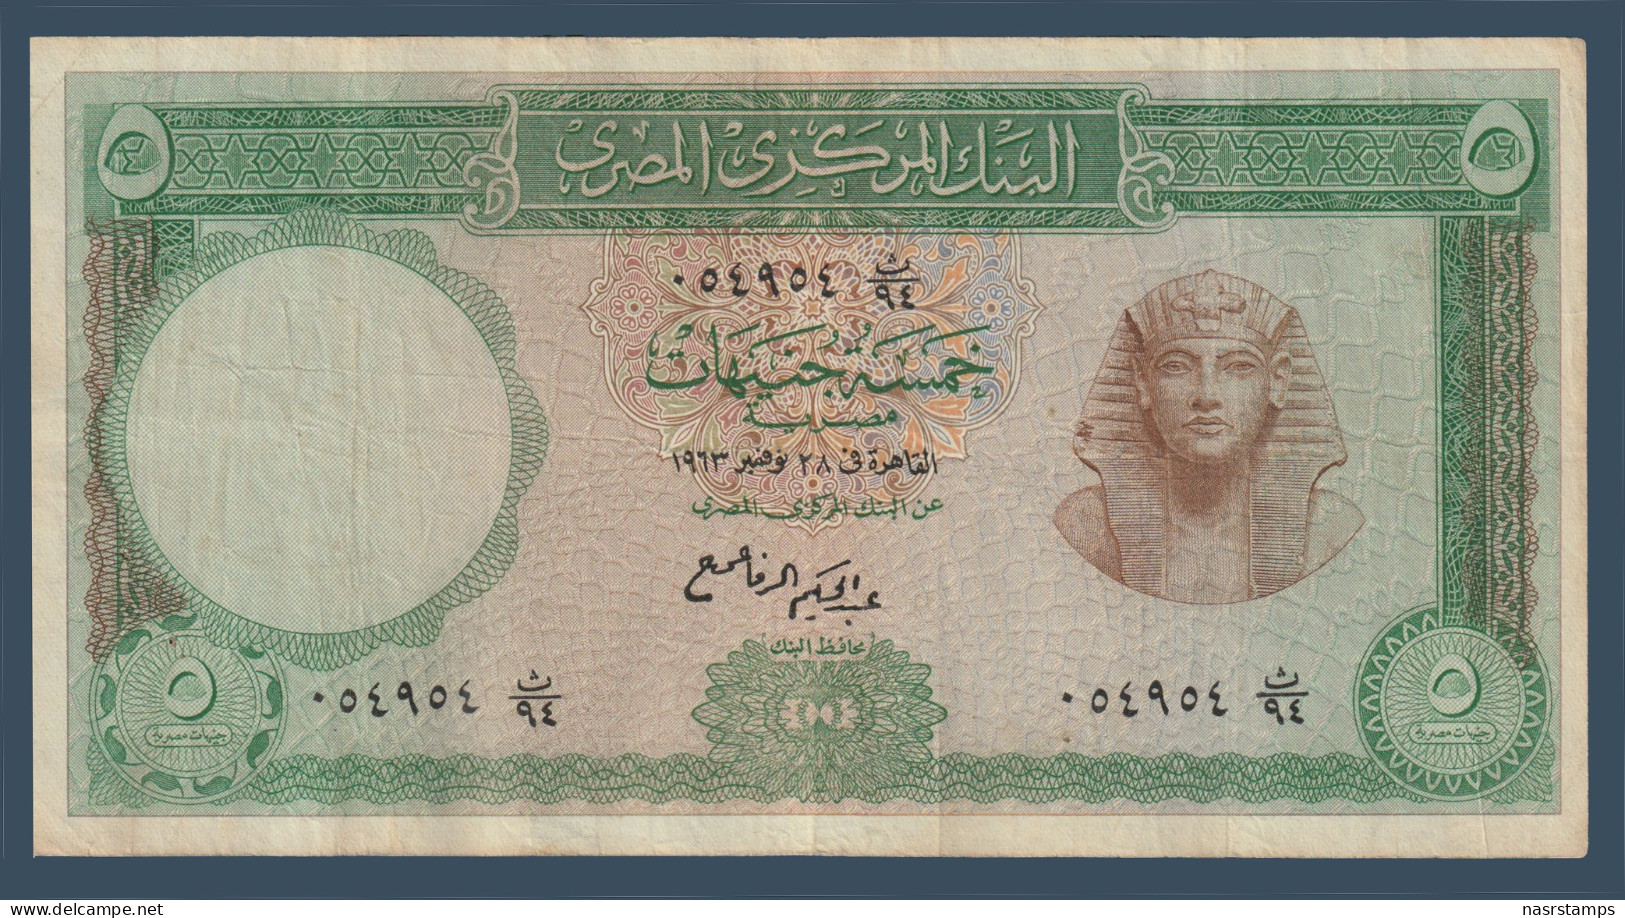 Egypt - 1963 - 5 Pounds - Pick-39 - Sign. #11 - Refay - V.F. - As Scan - Egypte